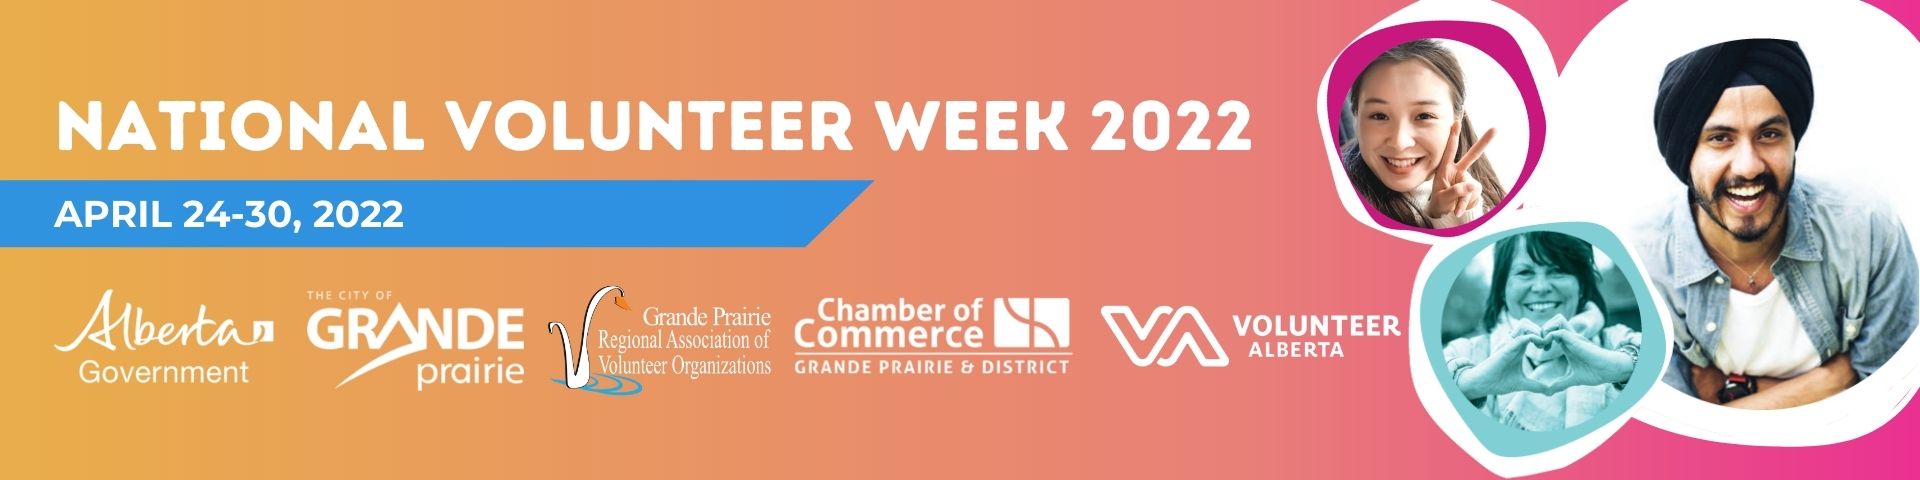 National Volunteer Week April 24-30 2022